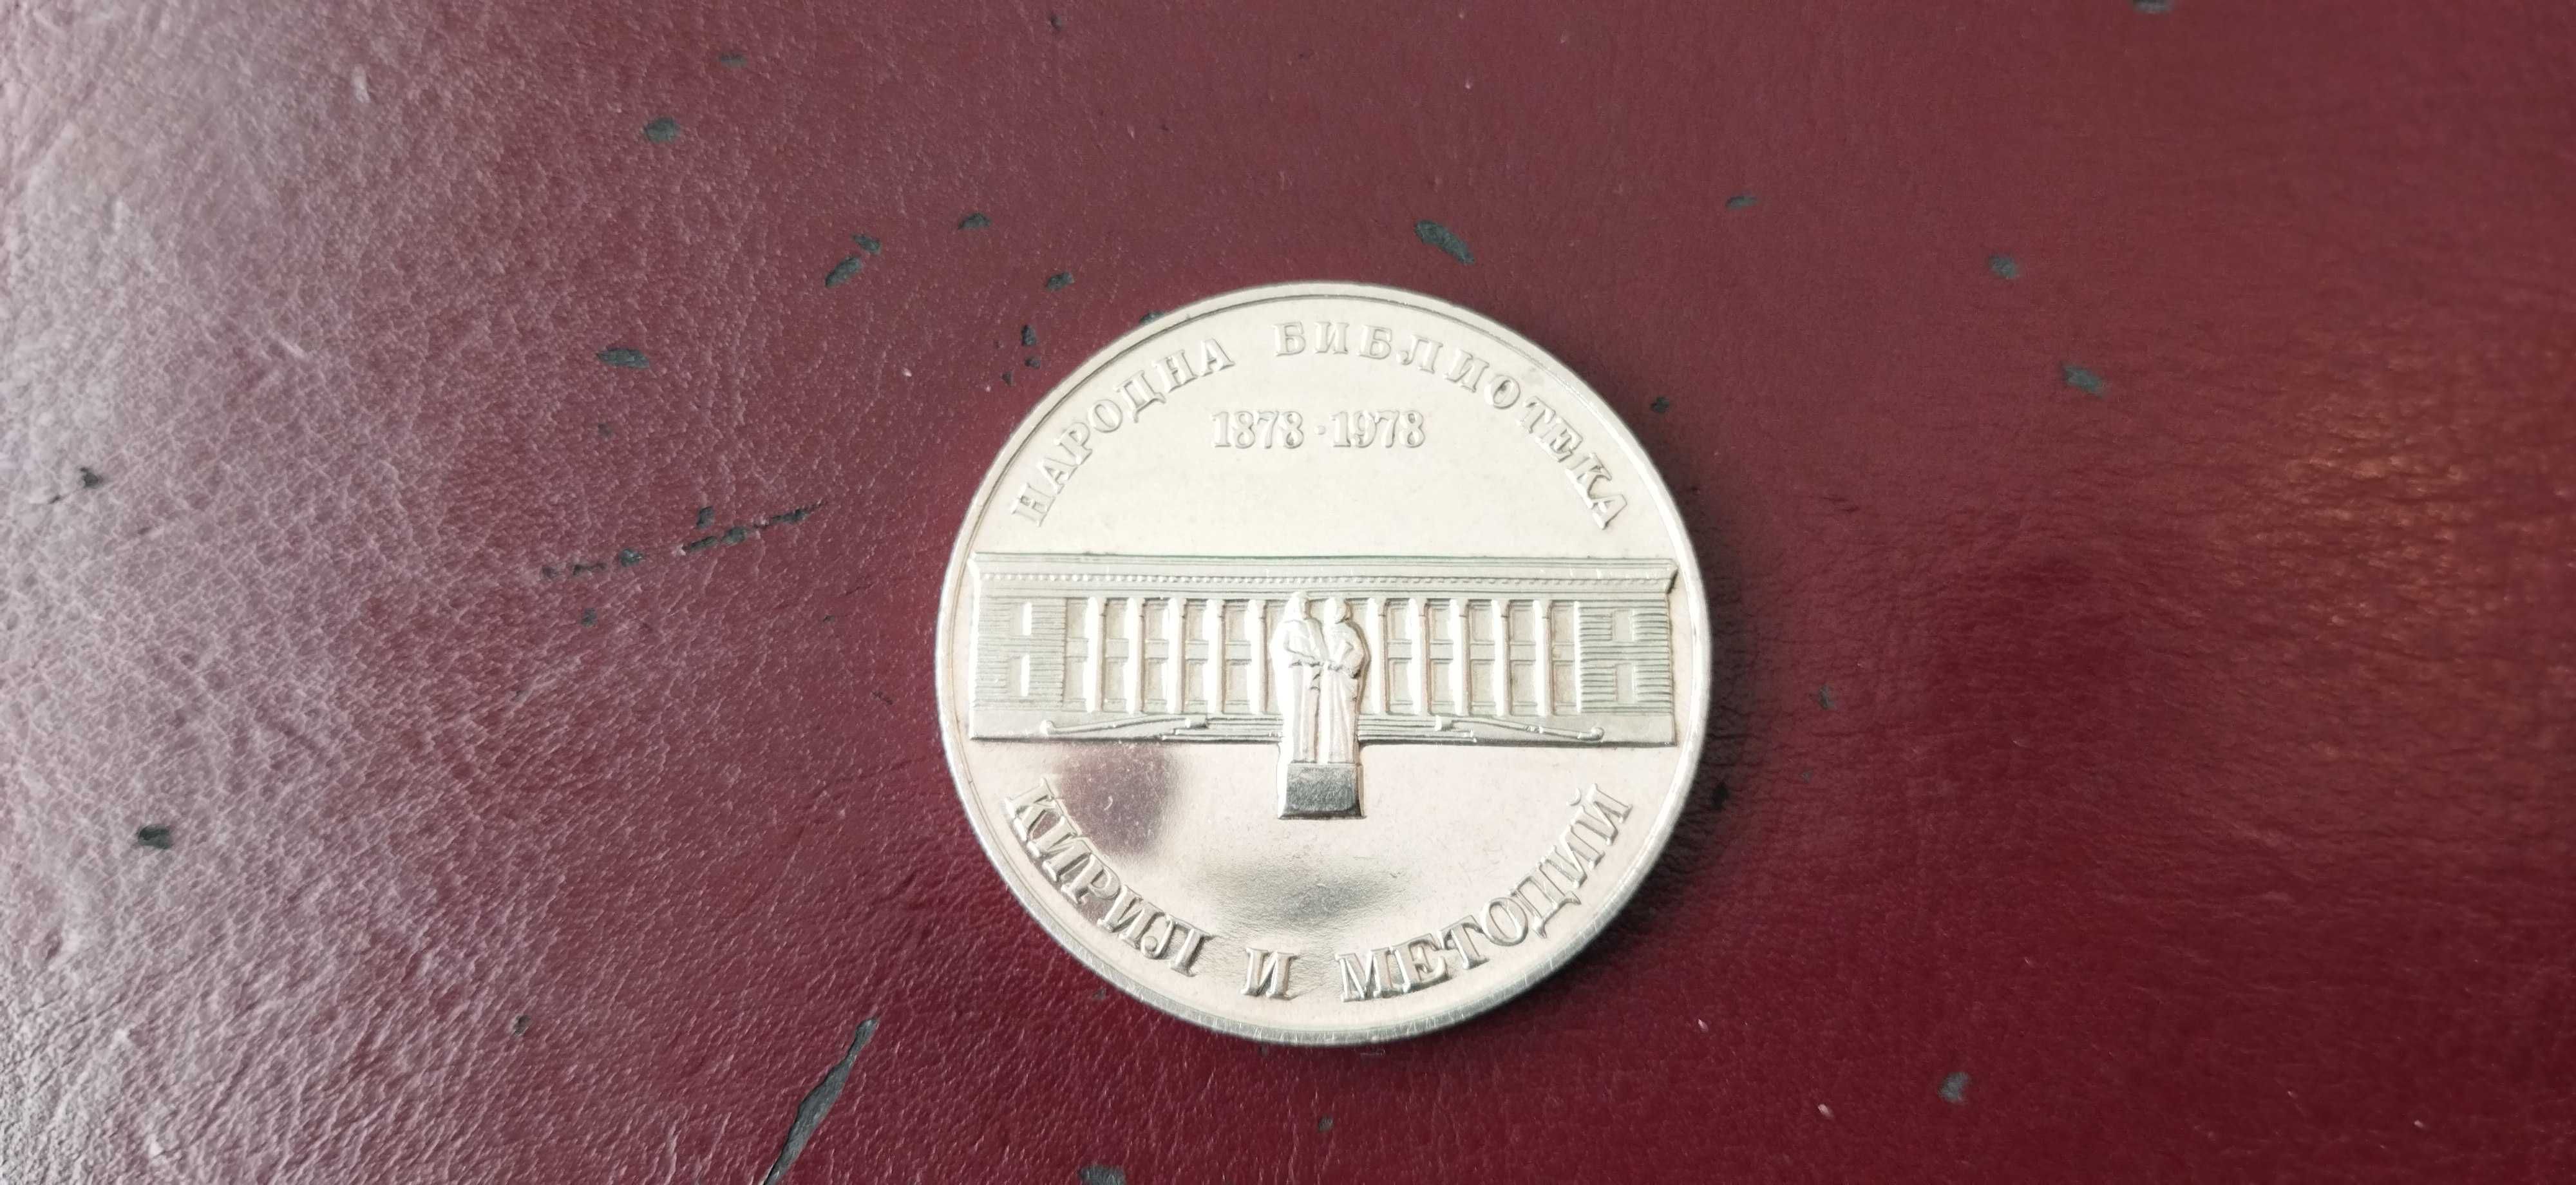 Сребърна юбилейна монета от 1978 год.